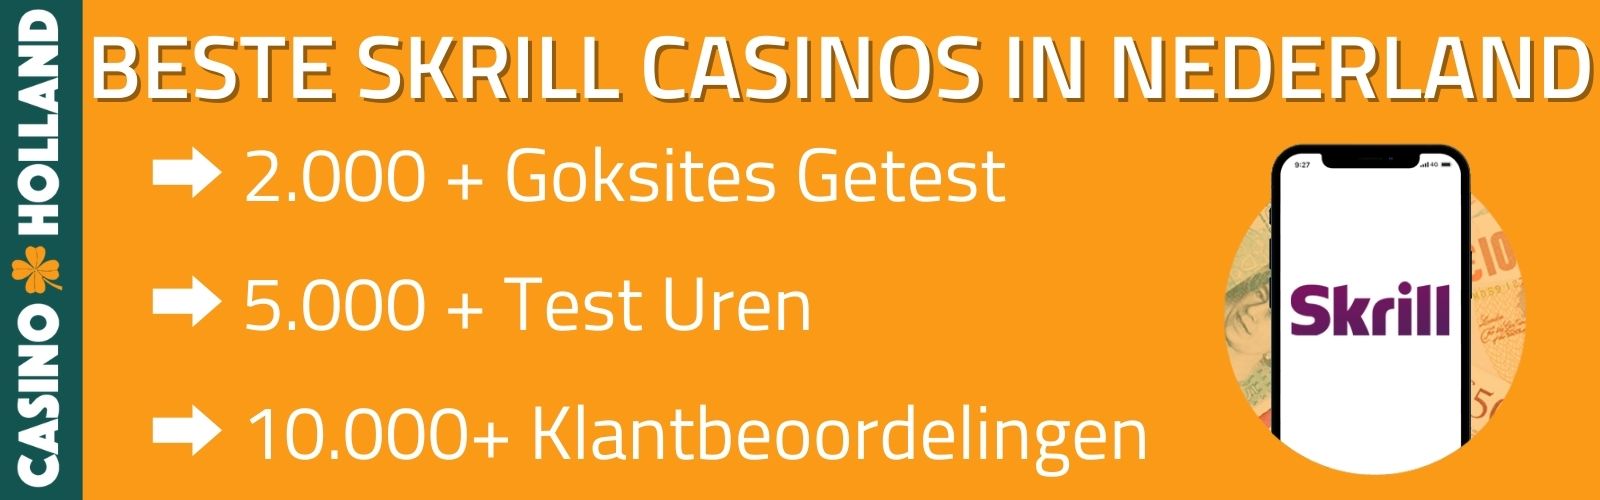 Skrill Casino Nederland